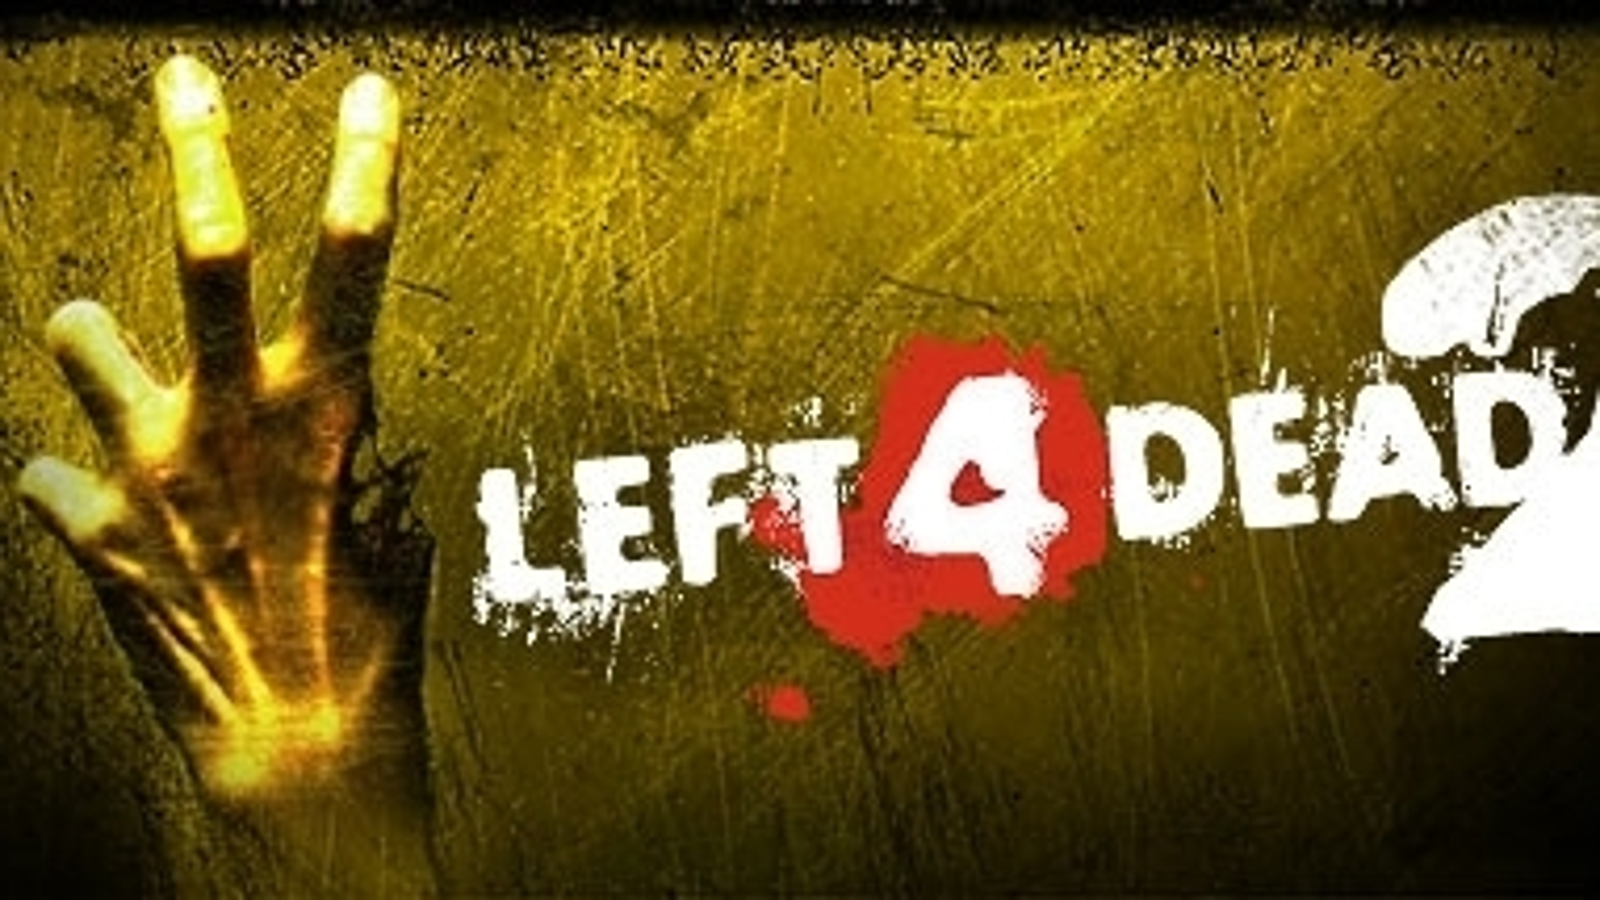 Download Survivors Mods for Left 4 Dead 2 